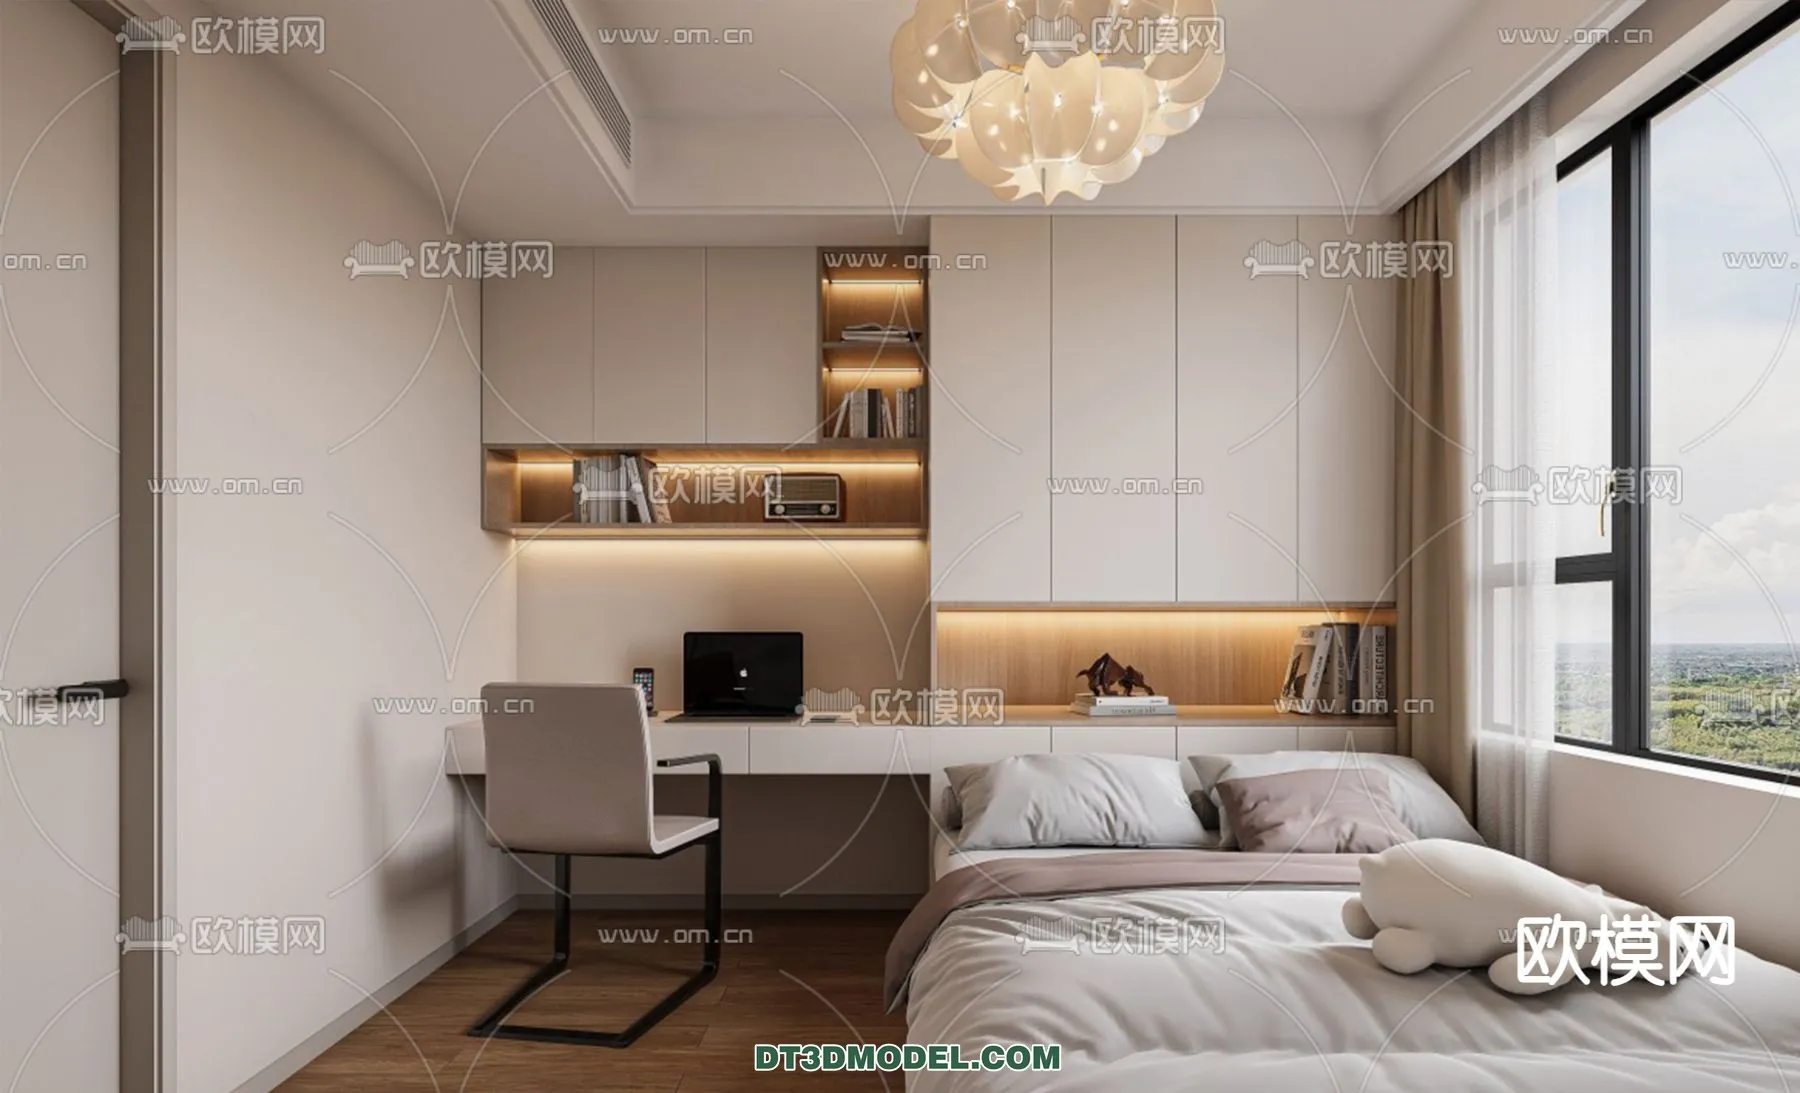 Tatami Bedroom – Japan Bedroom – 3D Scene – 015